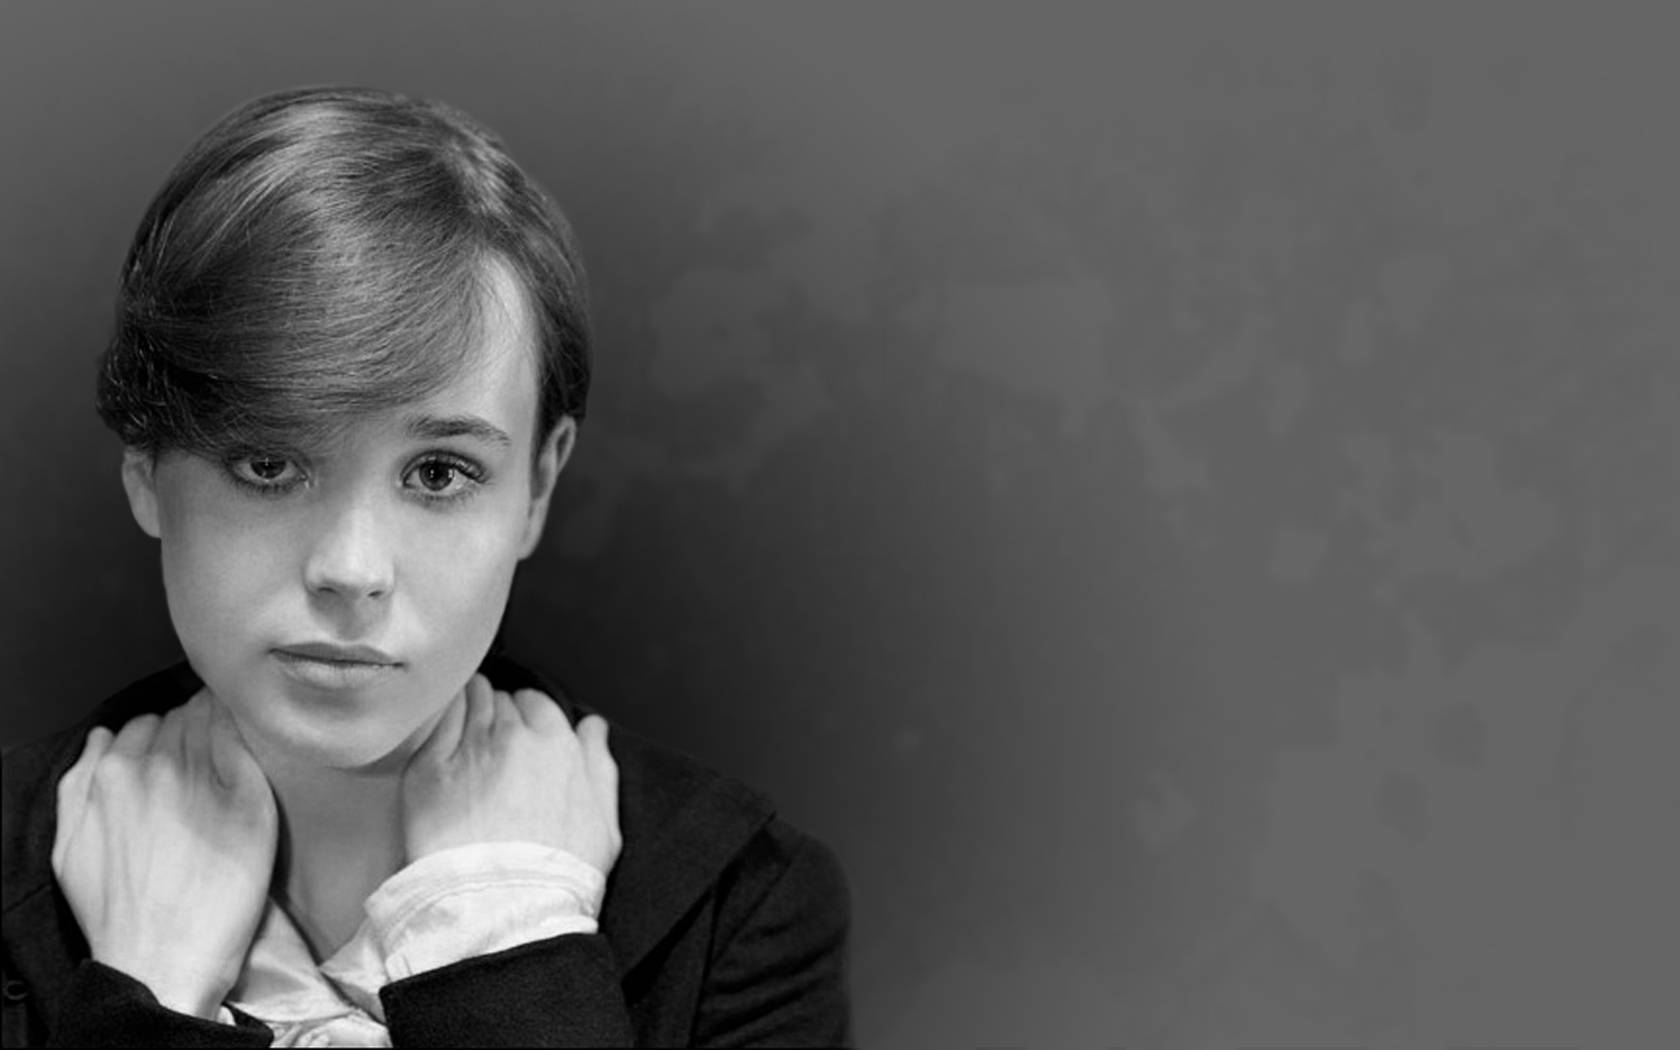 Ellen Page Wallpaper High Resolution Wallpaper. CuteHDWall